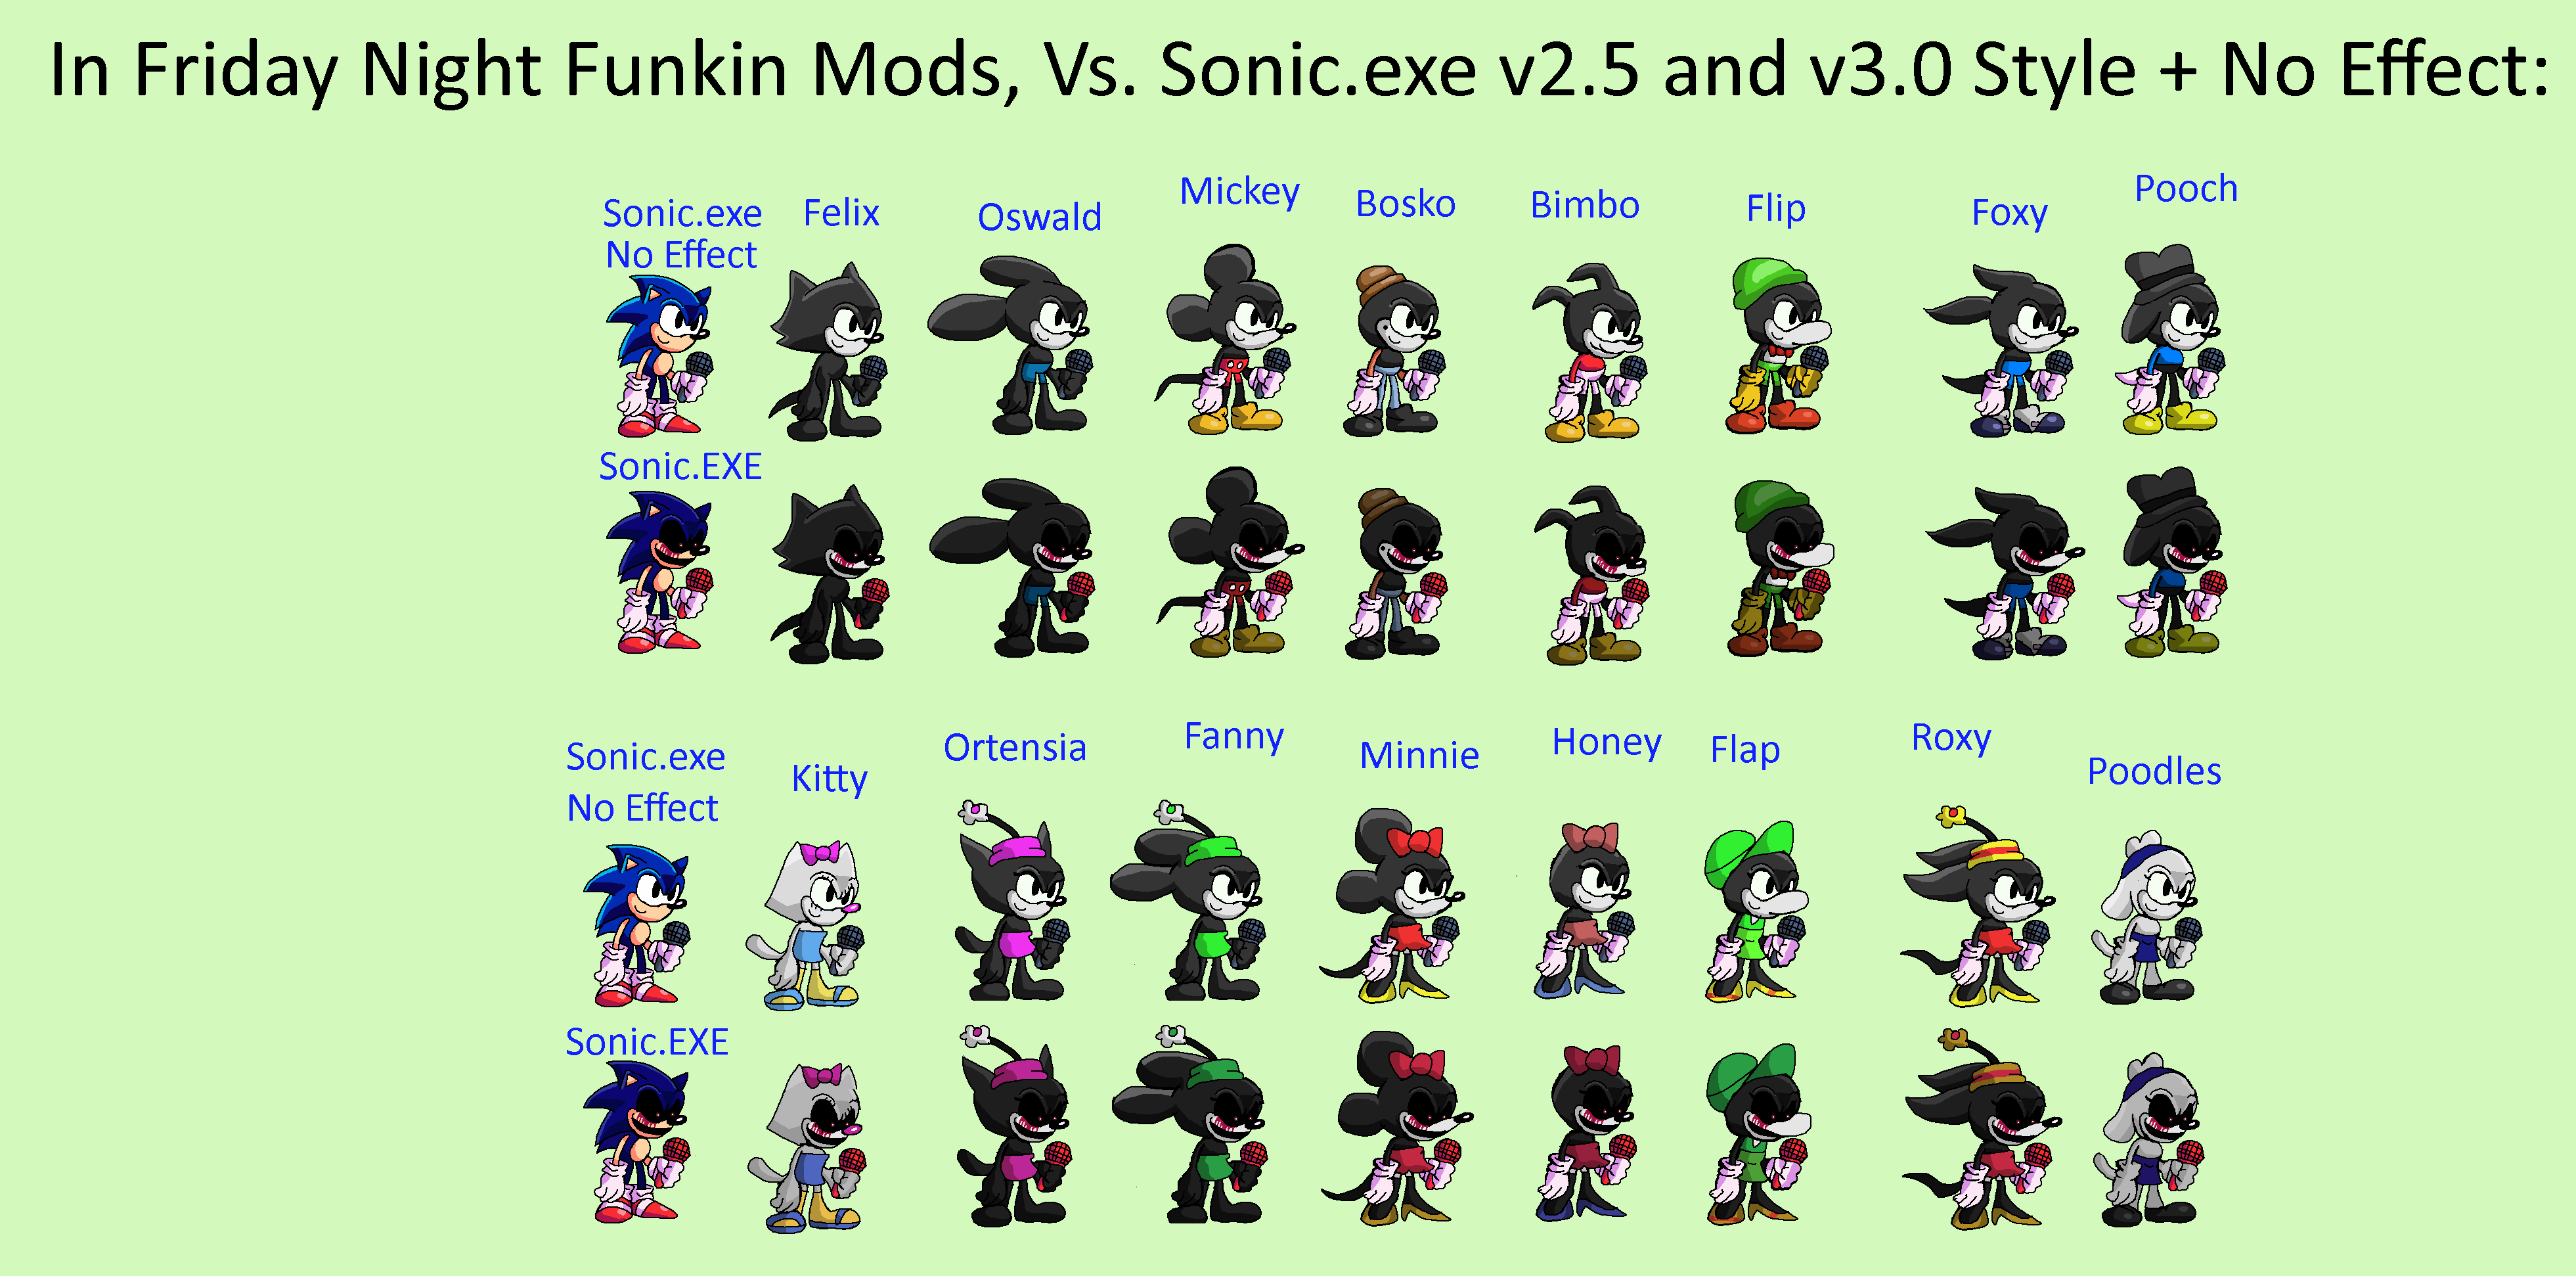 V3 My Sonic Multiverse of FNF Vs. Sonic.EXE Mod Op by Abbysek on DeviantArt